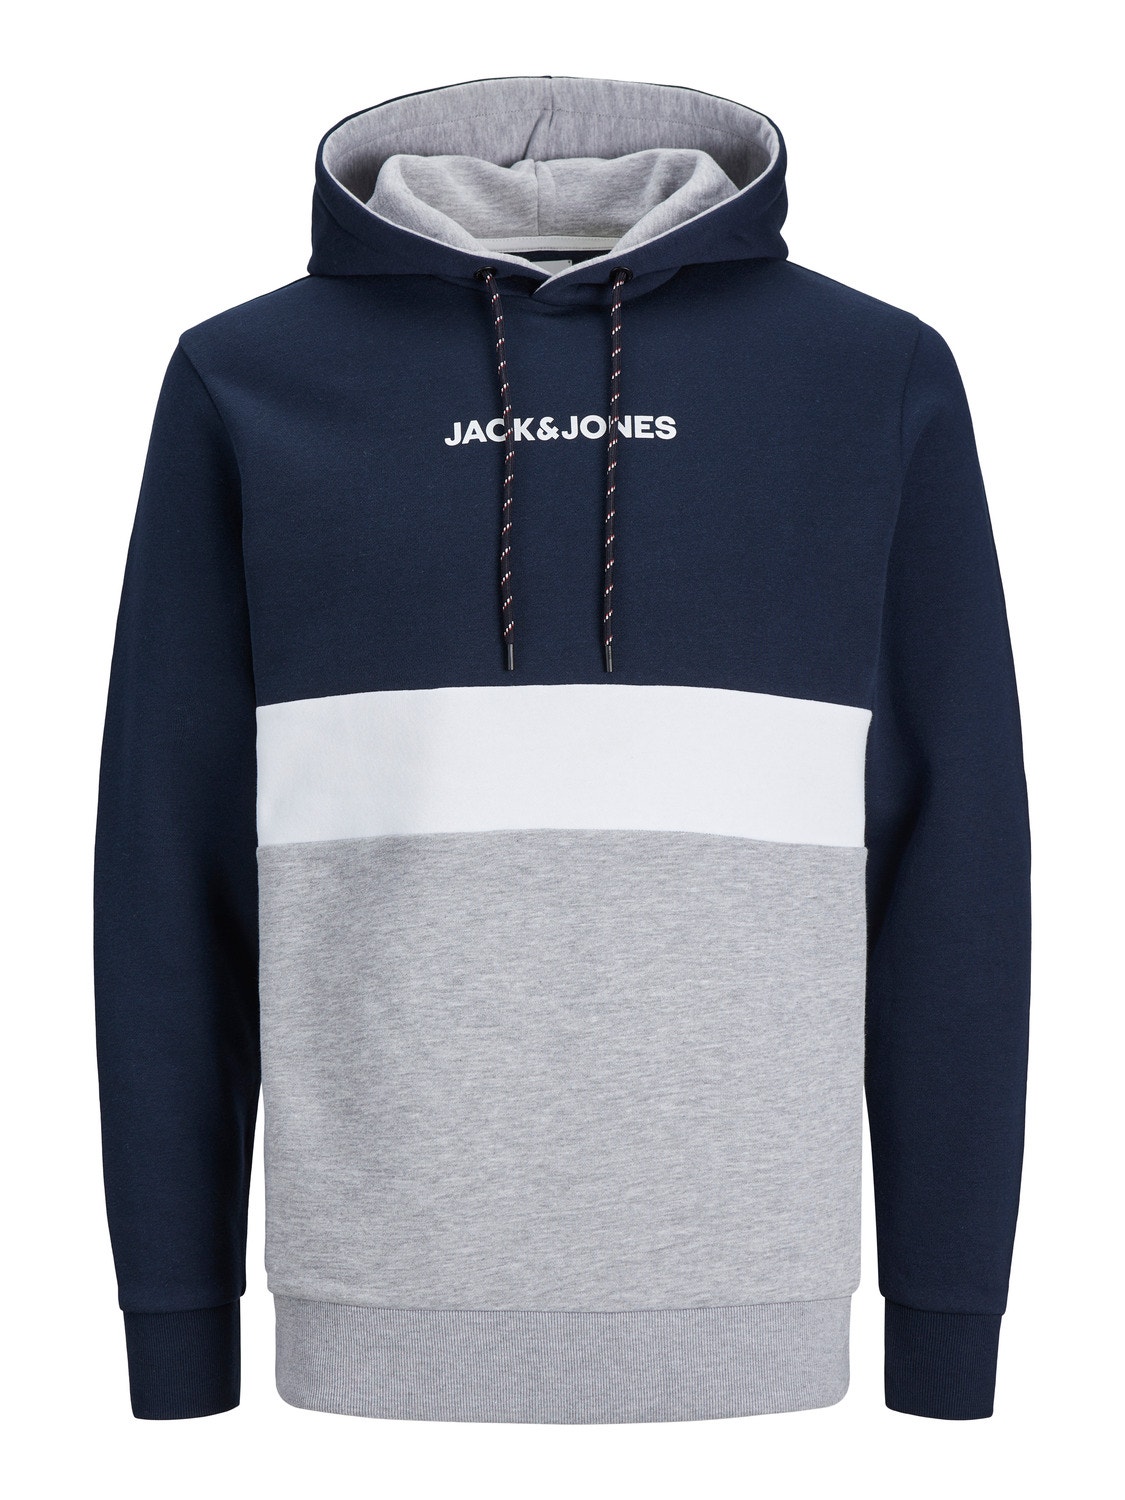 Jack & Jones Sudadera con capucha Bloques de color -Navy Blazer - 12233959